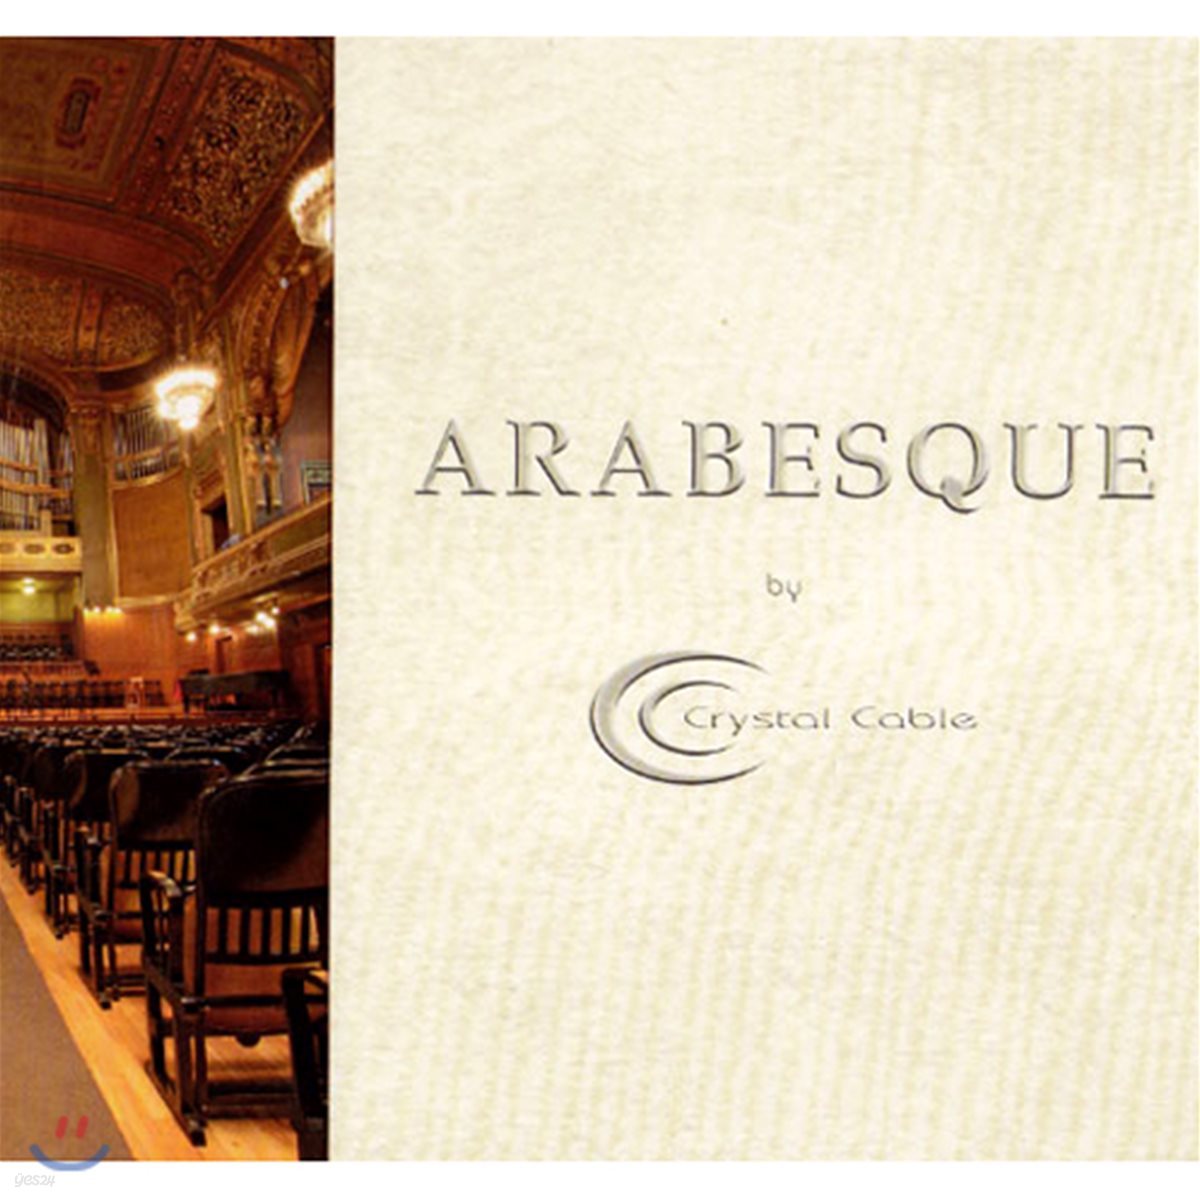 크리스탈 케이블 레이블 테스트 &amp; 샘플러 앨범 (Arabesque By Crystal Cable Sampler CD)